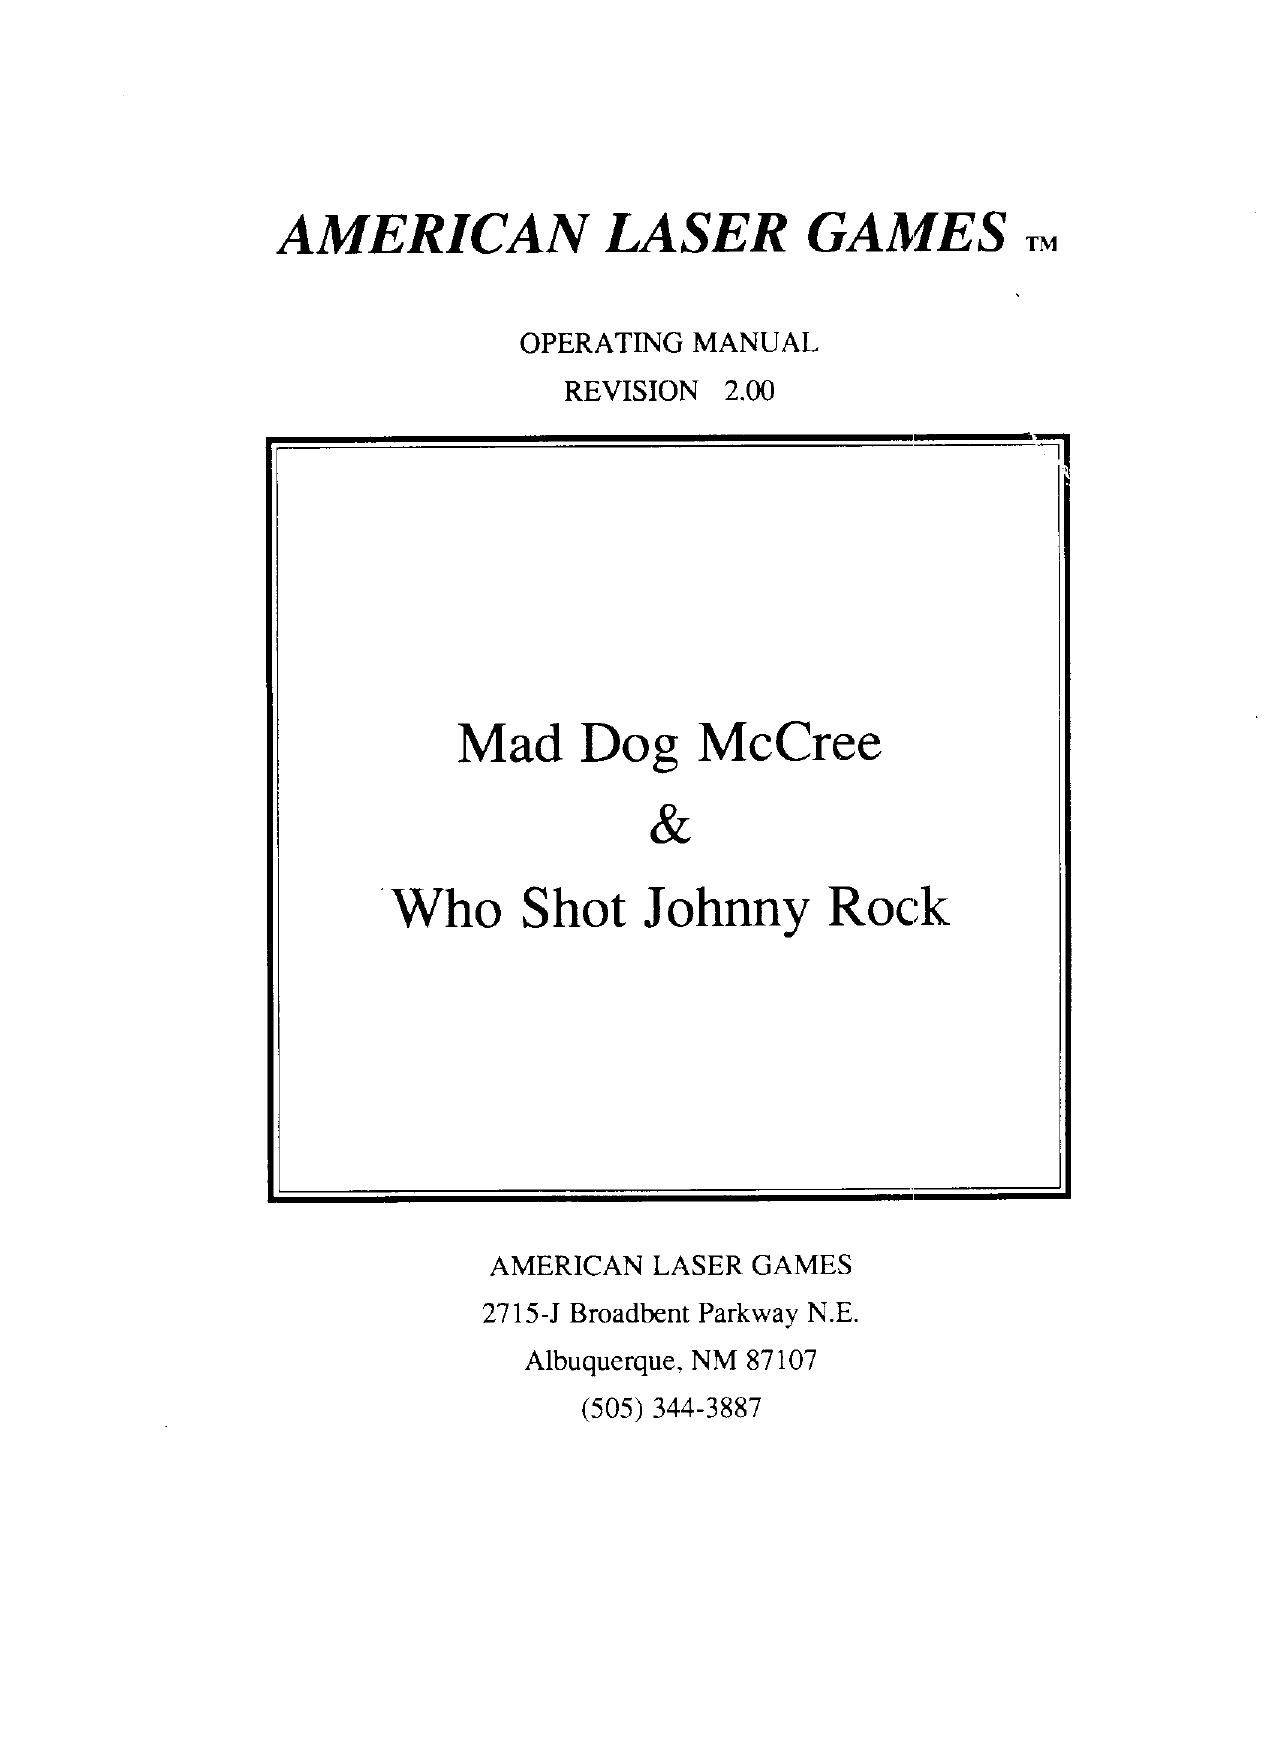 Mad Dog McCree and Who Shot Johhny Rock Manual Rev 2